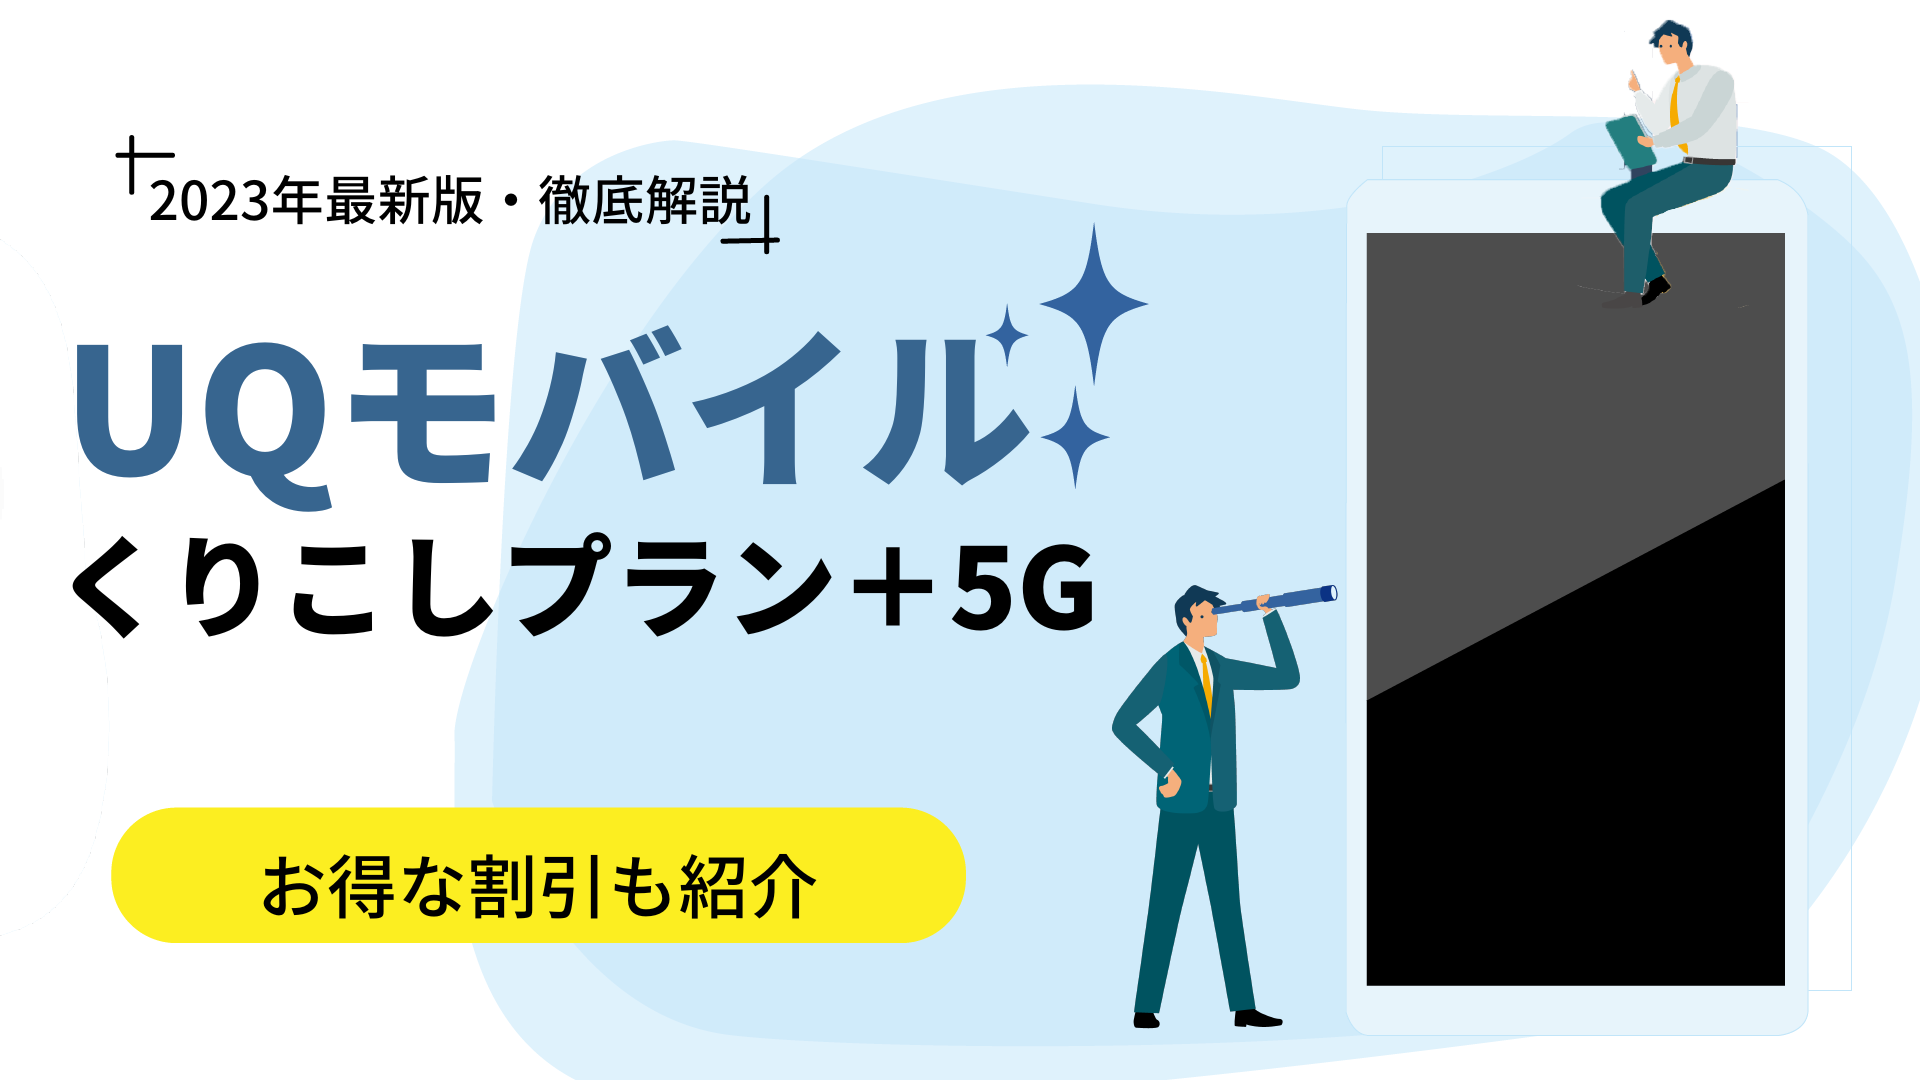 UQモバイルの新プラン「くりこしプラン +5G」を解説｜お得な割引も紹介